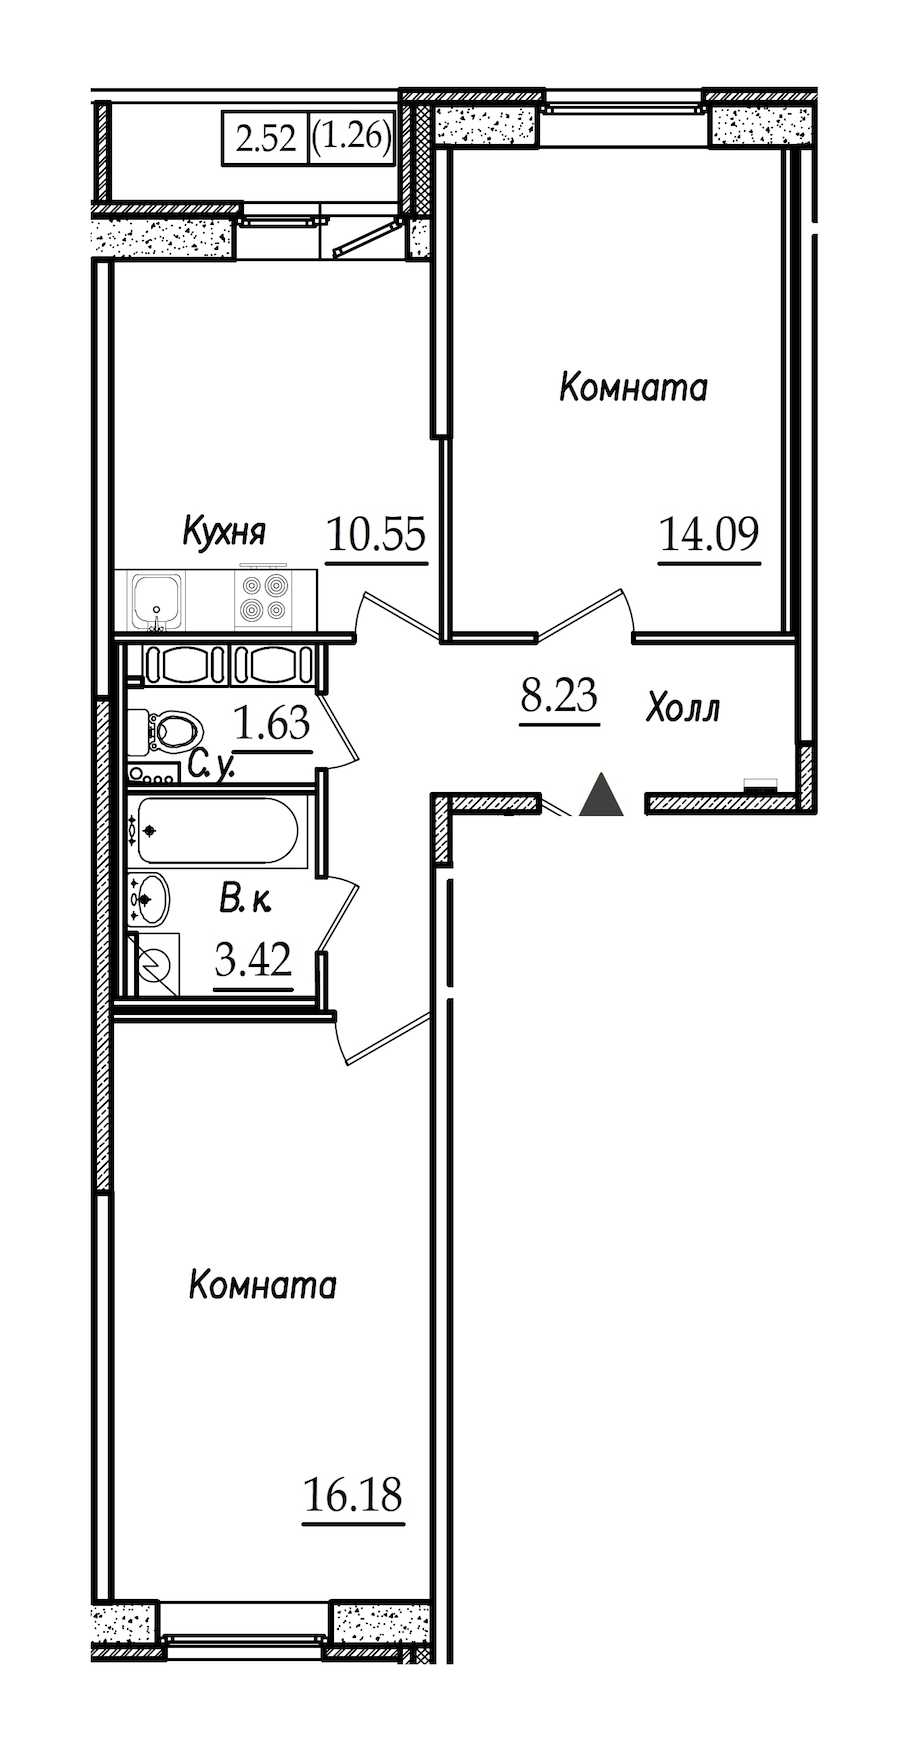 Двухкомнатная квартира в СПб Реновация: площадь 55.36 м2 , этаж: 6 – купить в Санкт-Петербурге